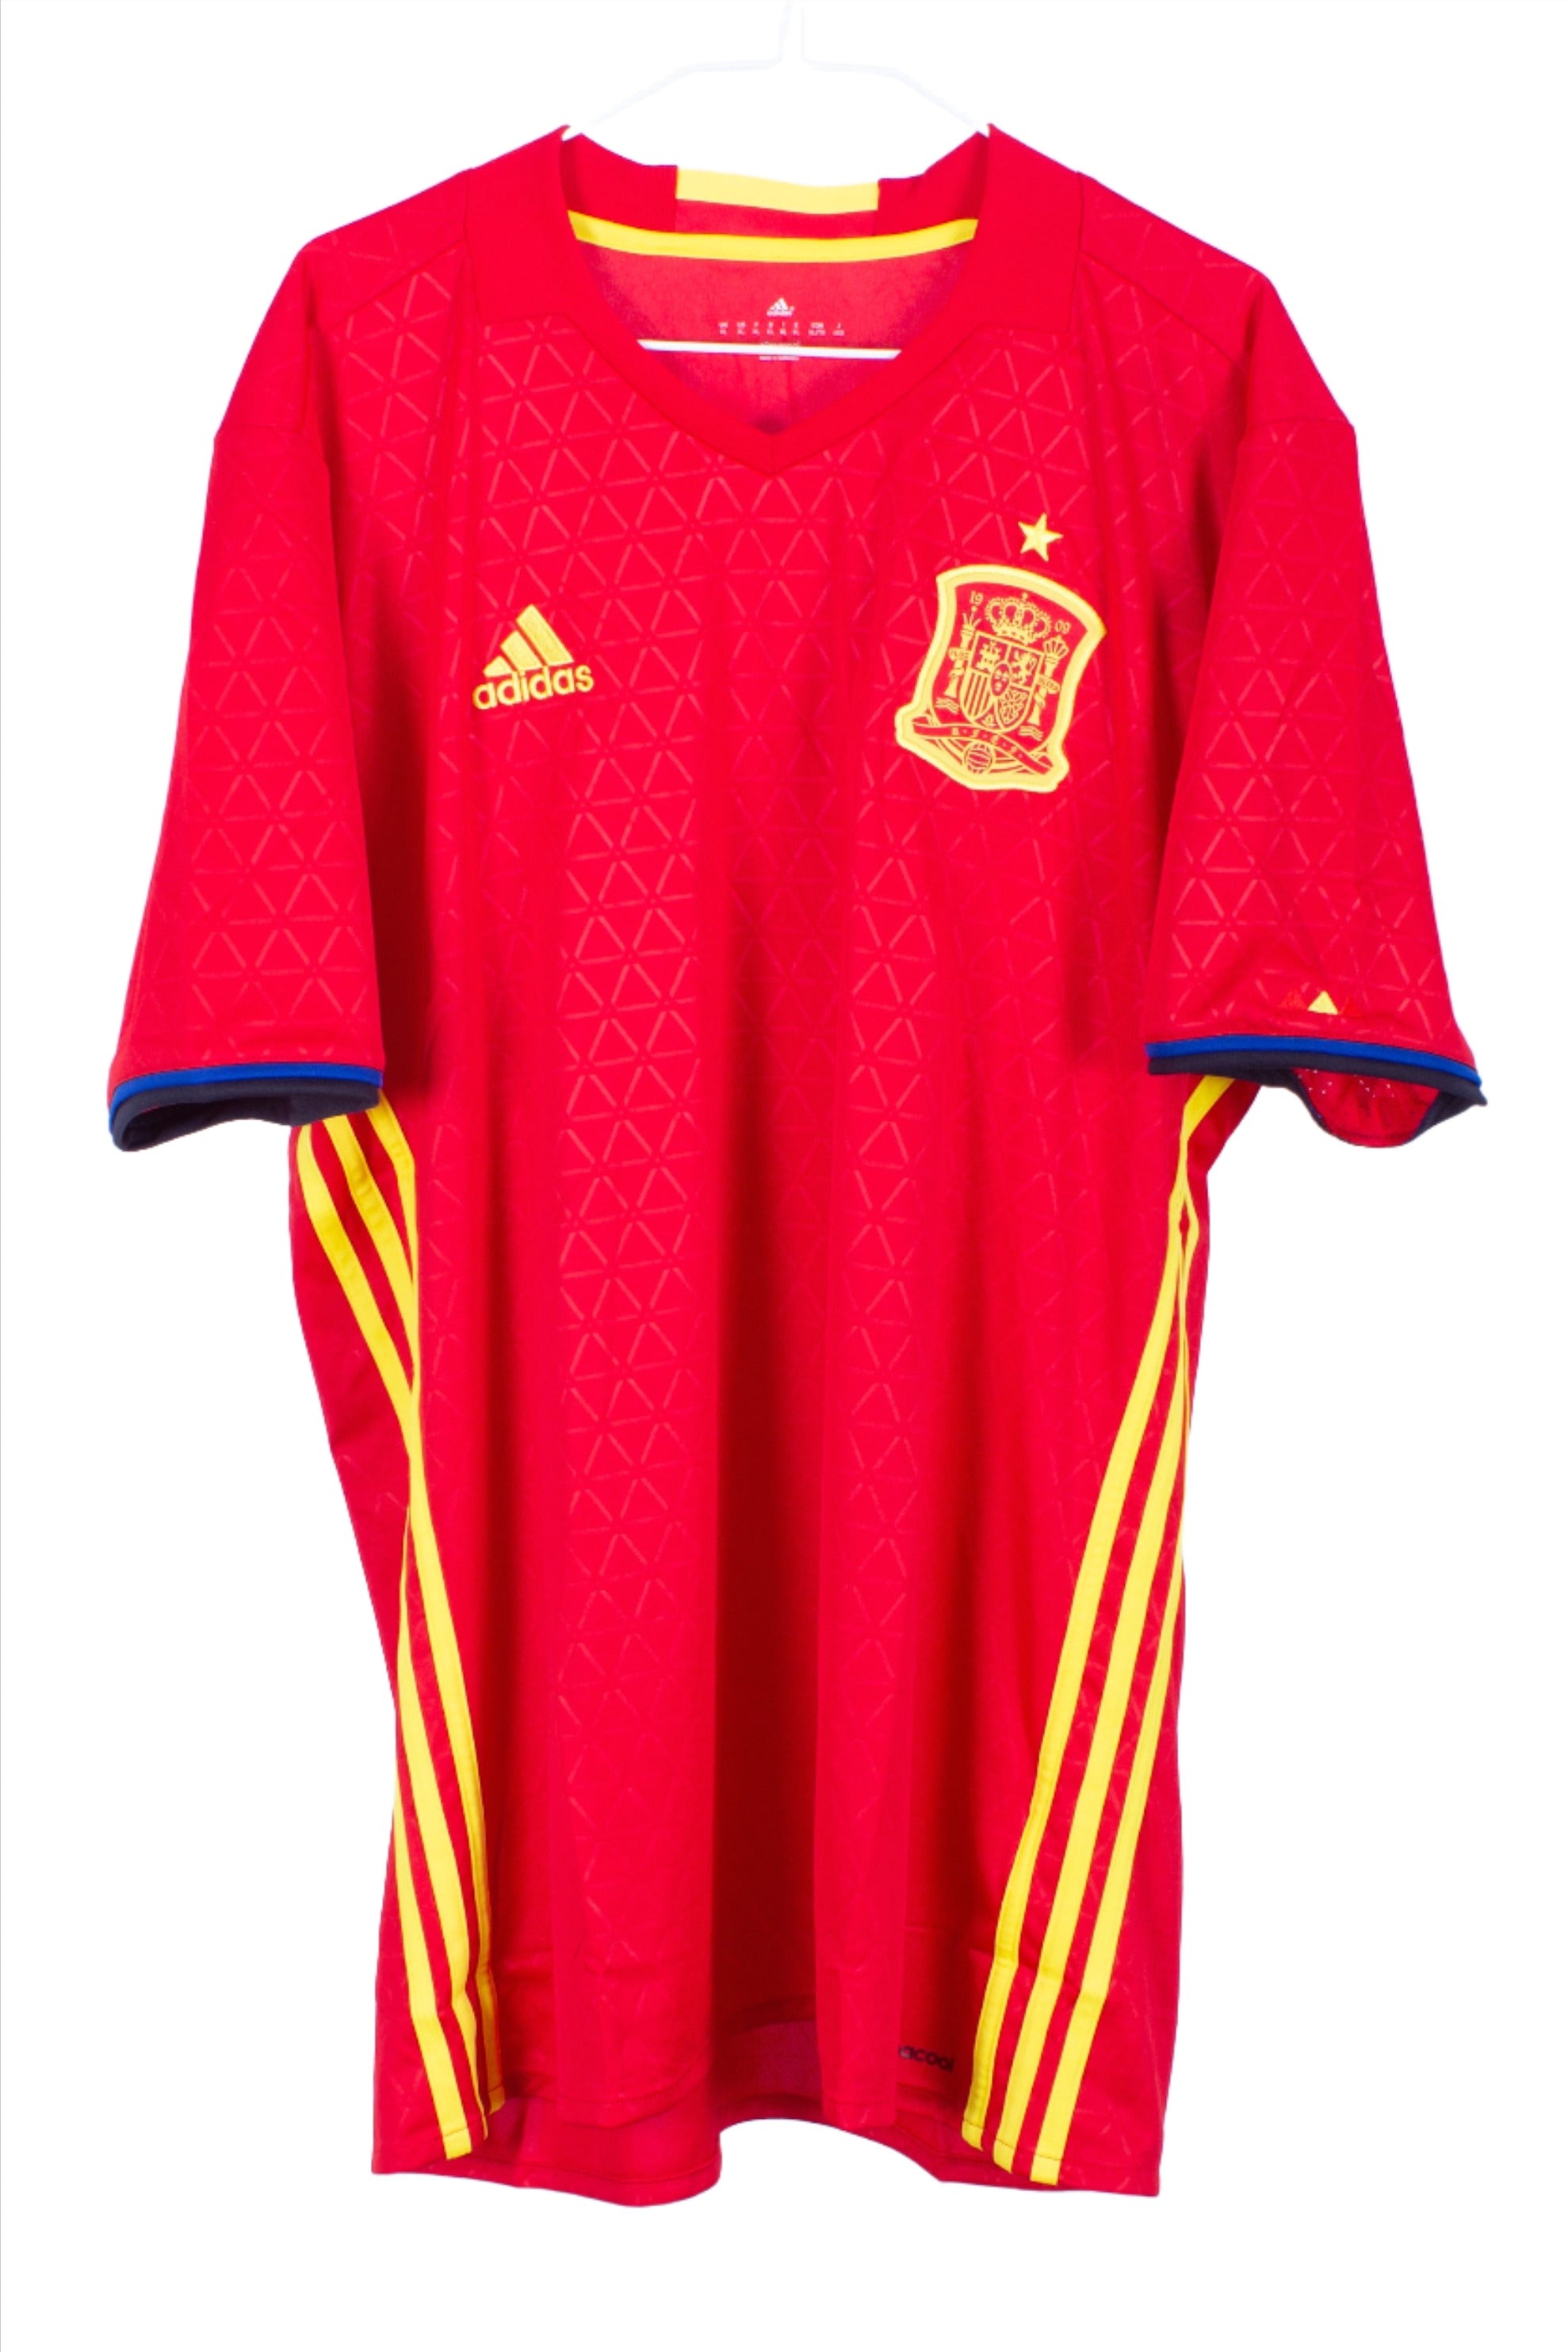 Spain 2016 Home Shirt *BNWT*